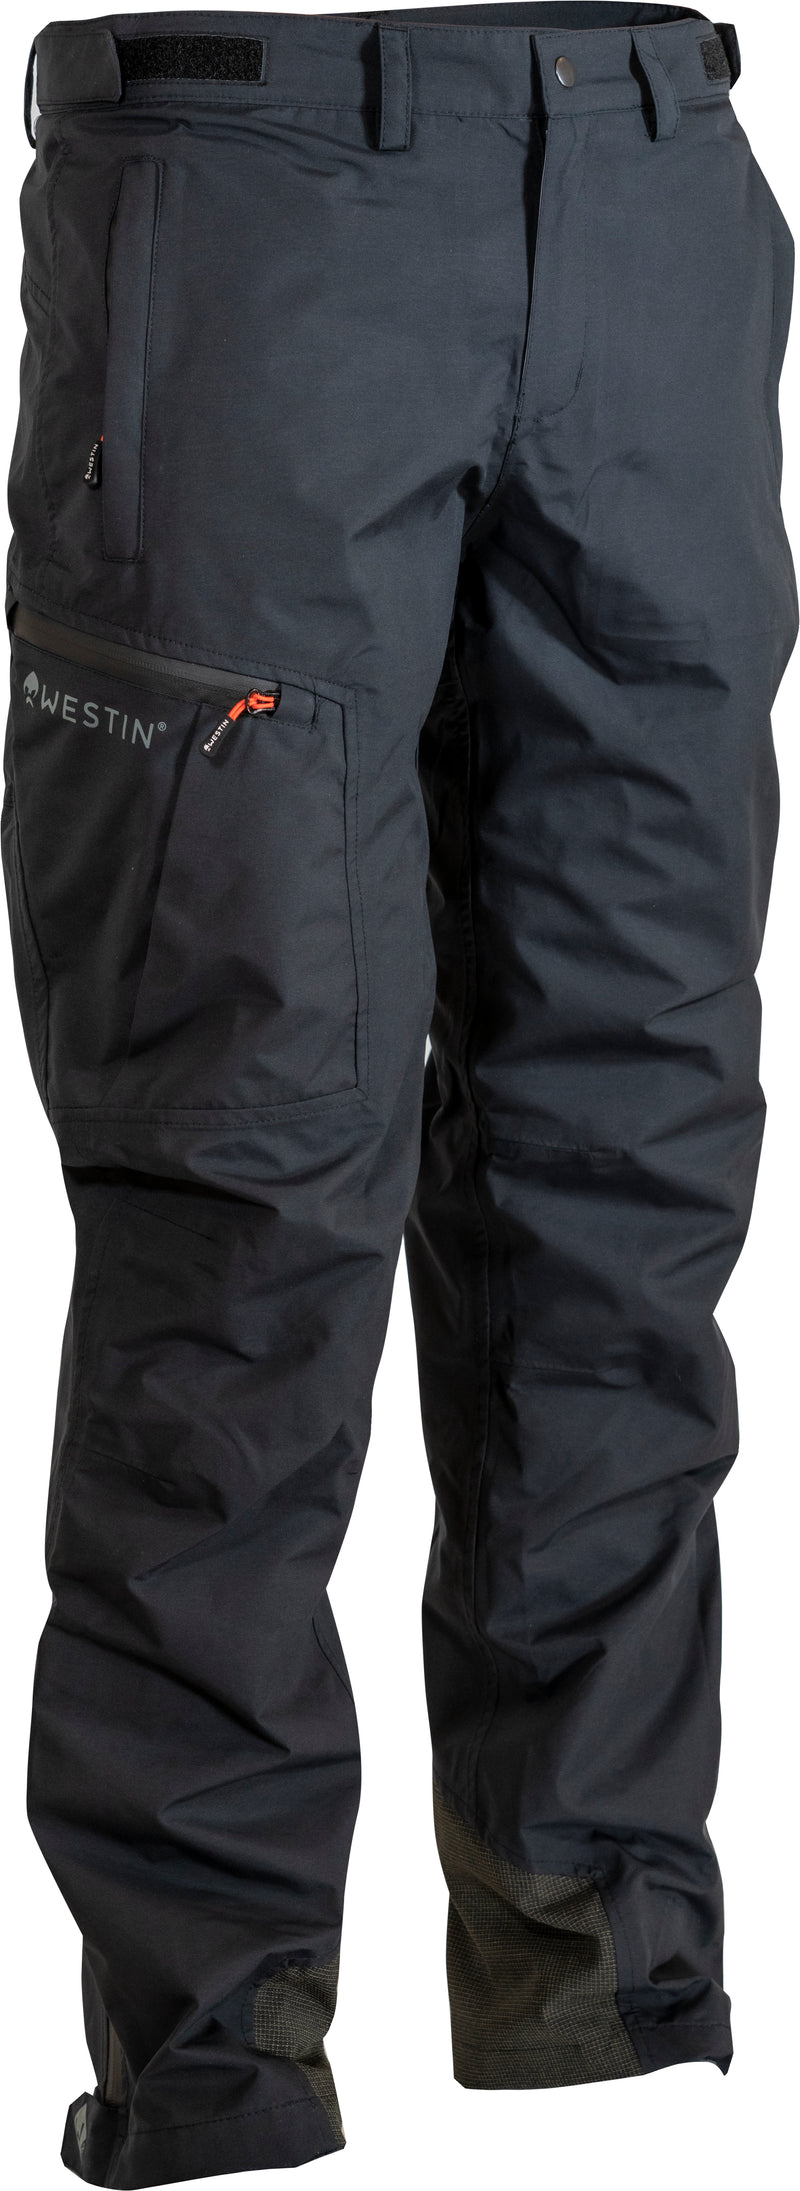 Westin W6 Rain Suit Pants